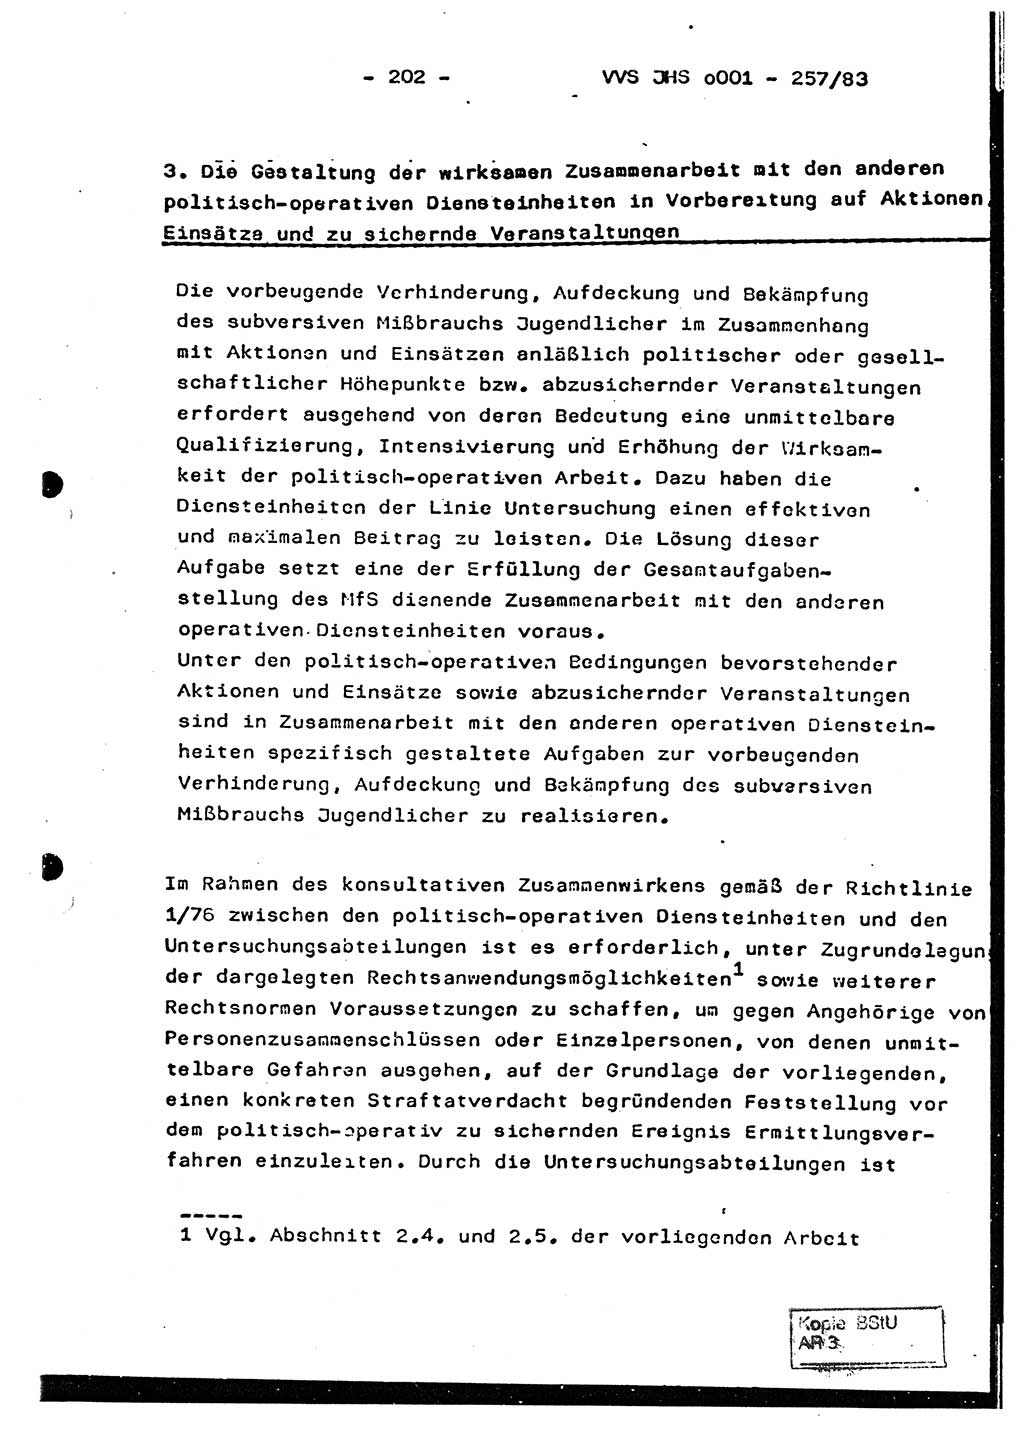 Dissertation, Oberst Helmut Lubas (BV Mdg.), Oberstleutnant Manfred Eschberger (HA IX), Oberleutnant Hans-Jürgen Ludwig (JHS), Ministerium für Staatssicherheit (MfS) [Deutsche Demokratische Republik (DDR)], Juristische Hochschule (JHS), Vertrauliche Verschlußsache (VVS) o001-257/83, Potsdam 1983, Seite 202 (Diss. MfS DDR JHS VVS o001-257/83 1983, S. 202)